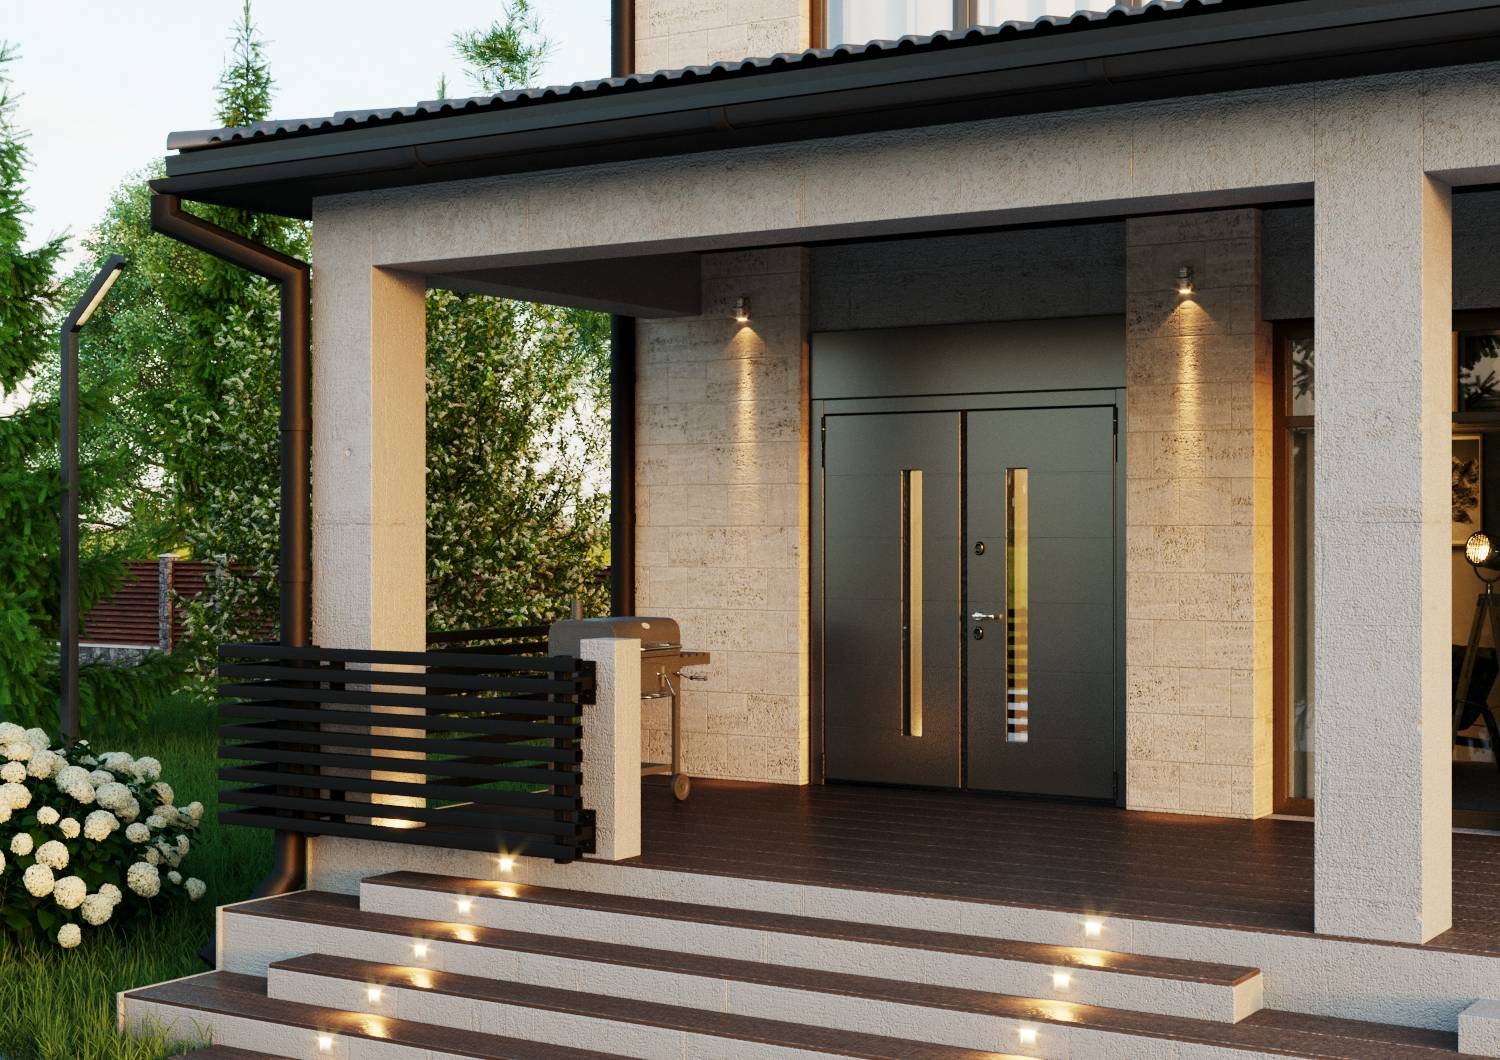 Входные двери пвх (металлопластиковые) в частный дом | онлайн-журнал о ремонте и дизайне